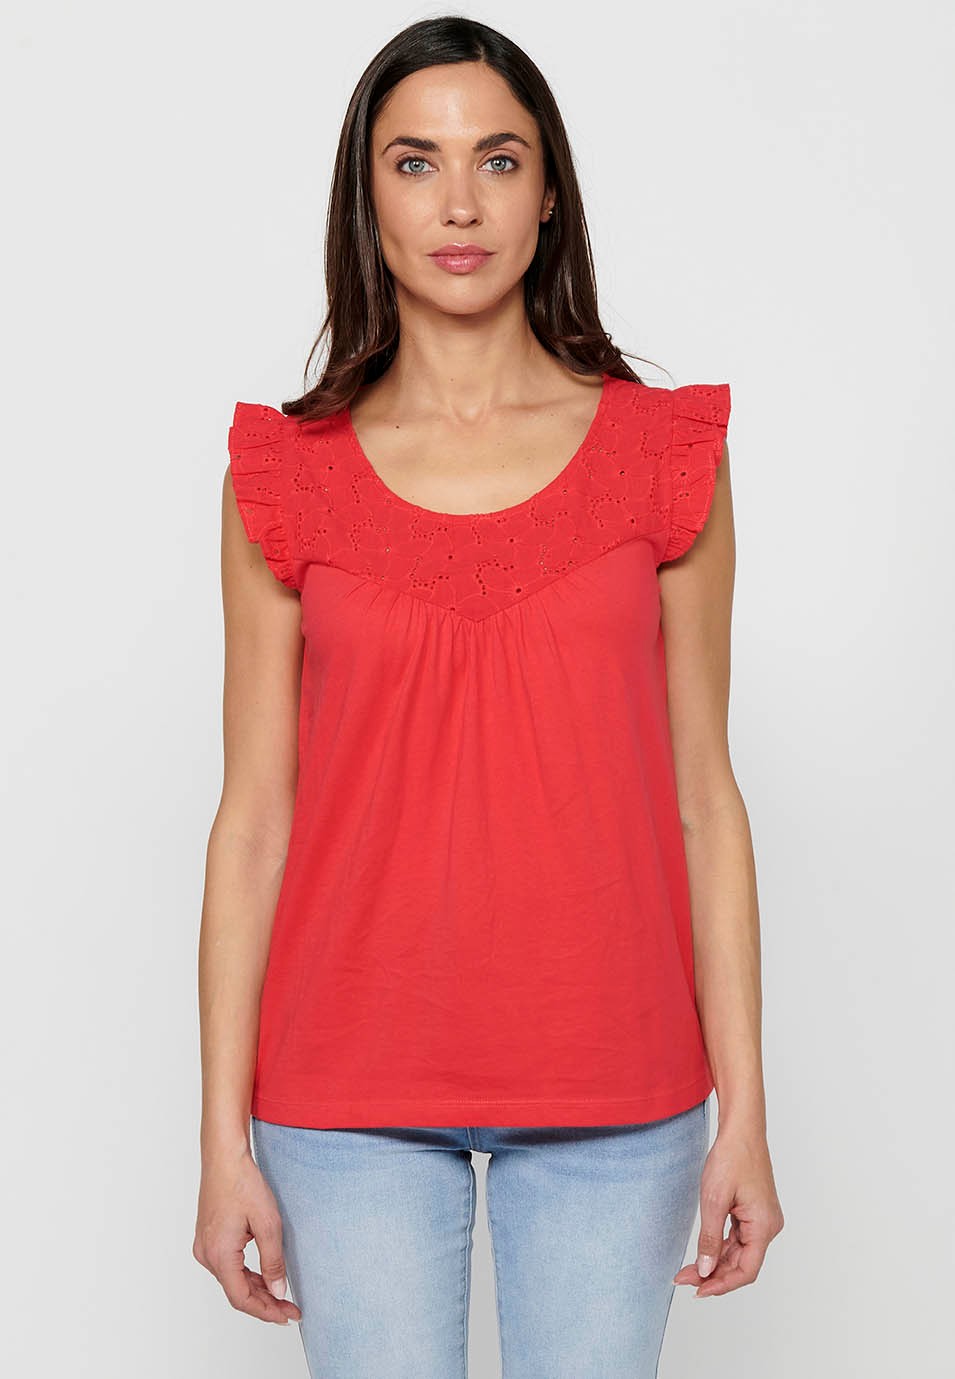 Camiseta de manga corta de Cuello redondo con Volante en los hombros de Color Coral para Mujer